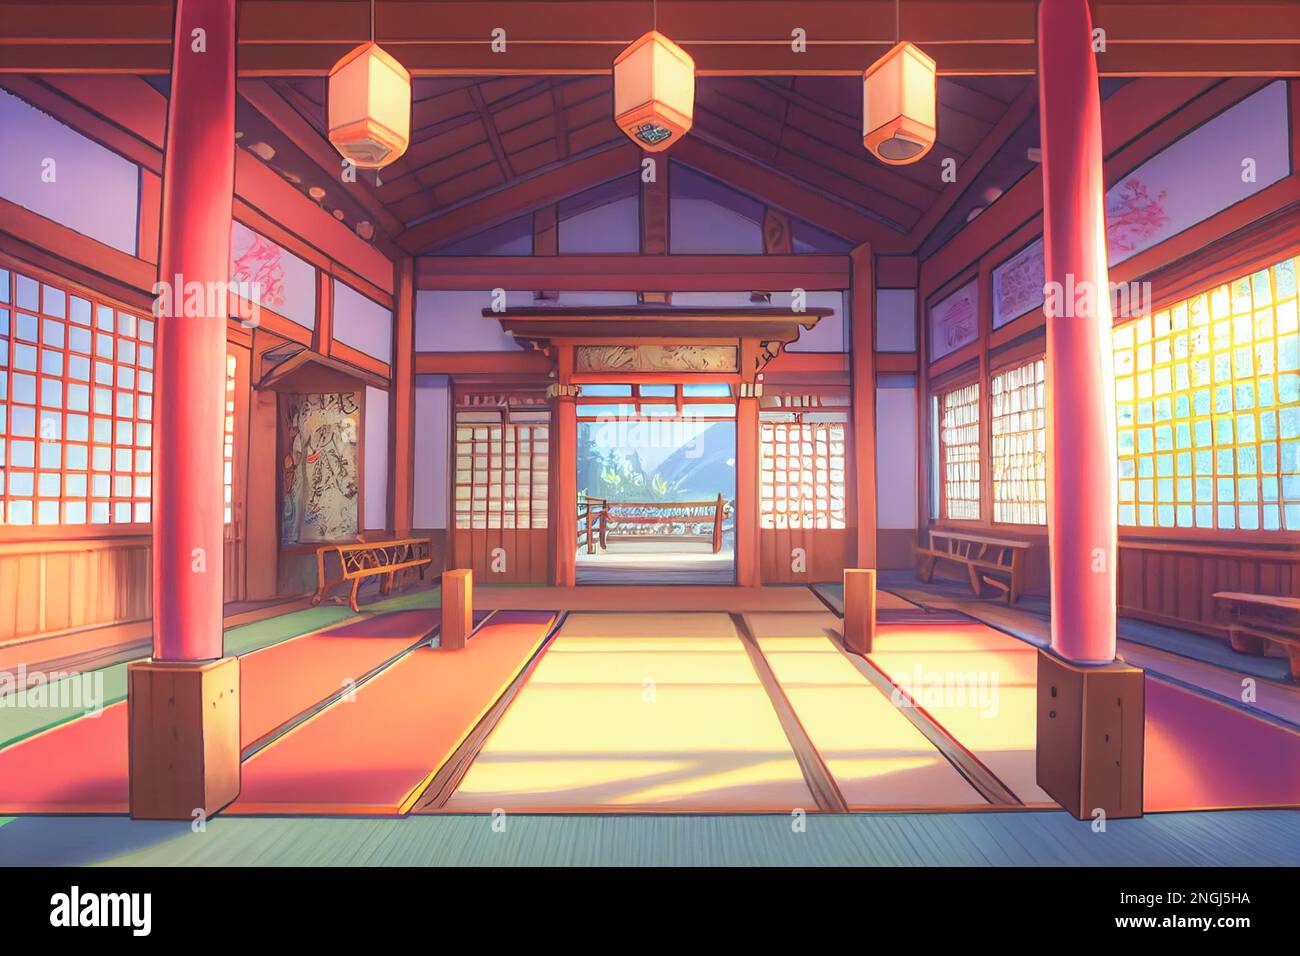 Share 158+ anime dojo background best - 3tdesign.edu.vn